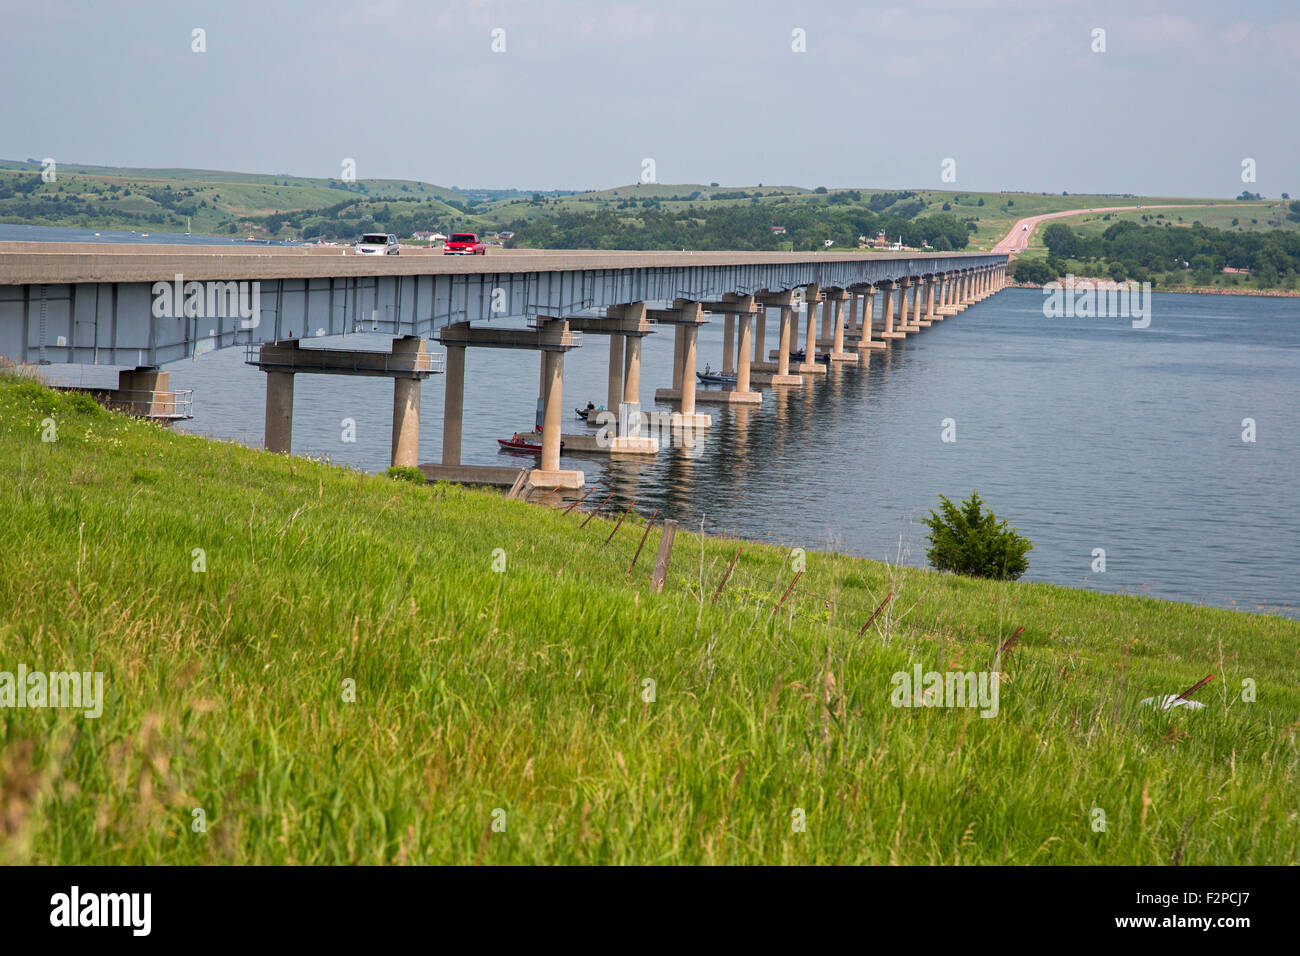 Gregory Comté, Dakota du Sud - Voitures voyage sur le cas Francis pont comme, ci-dessous, les gens pêchent à partir de bateaux dans la rivière Missouri. Banque D'Images